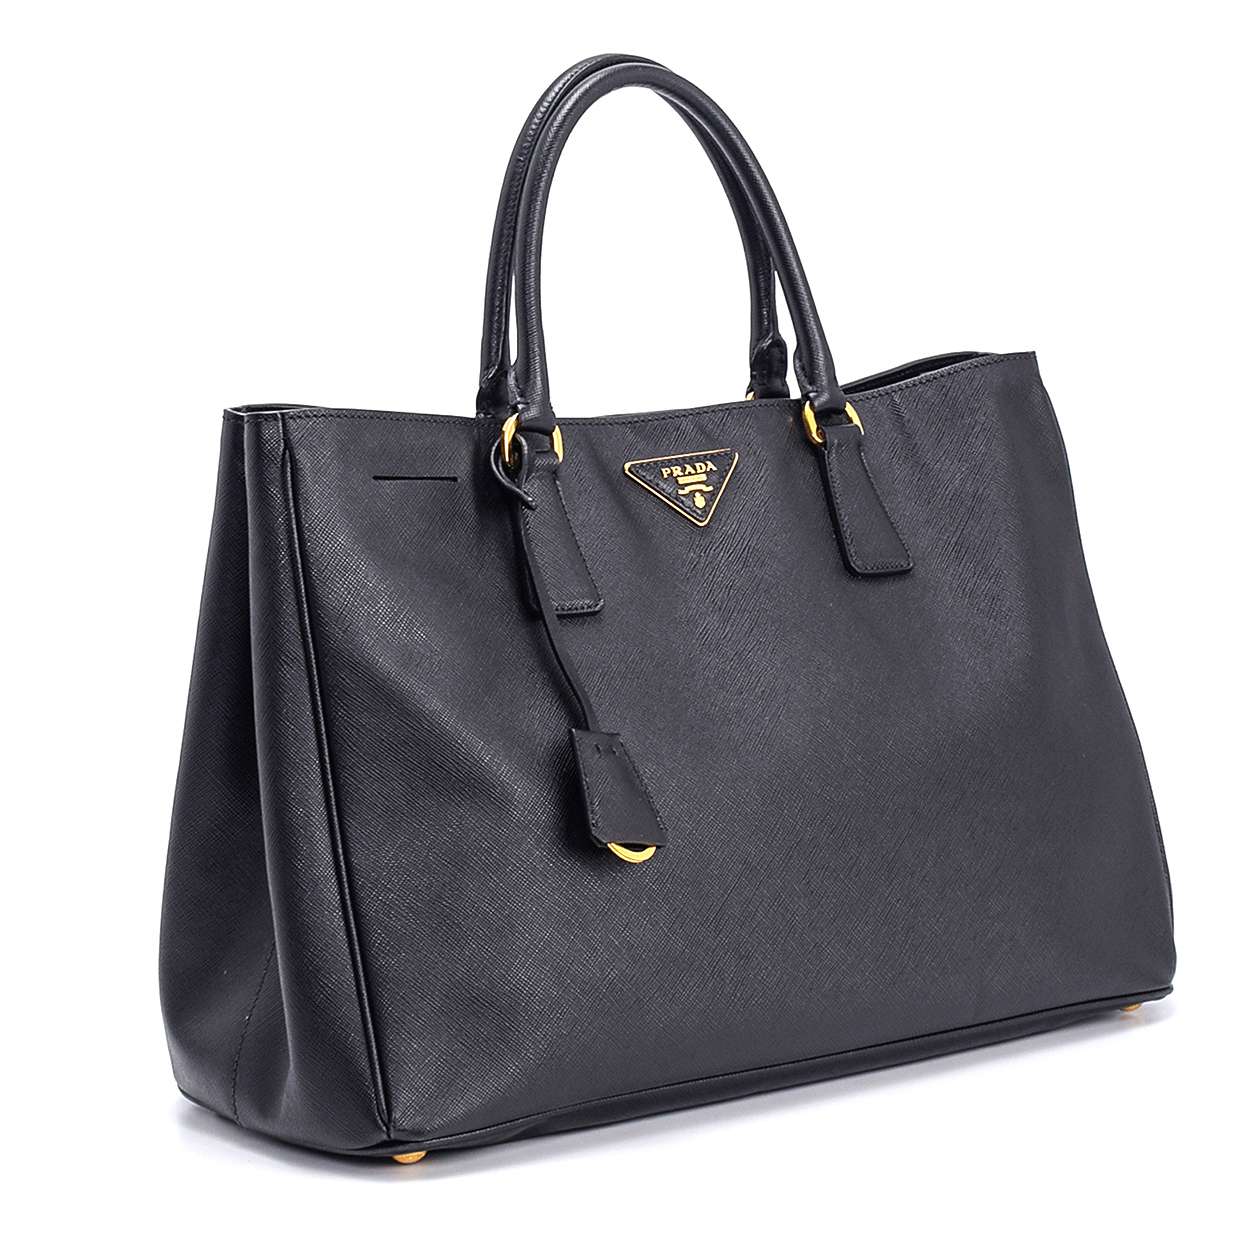 Prada - Black Saffiano Leather Galleria Medium Tote Bag